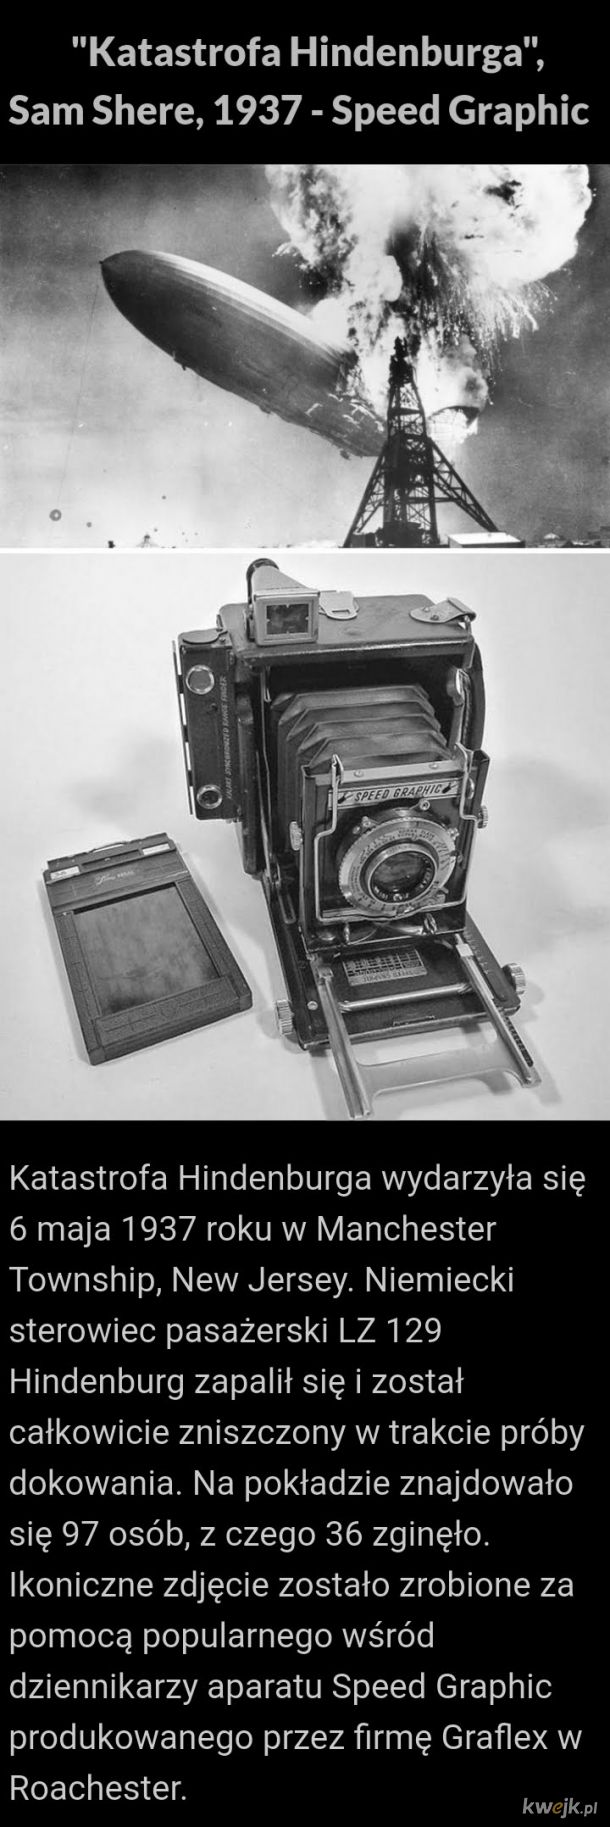 Historyczne zdjęcia i aparaty którymi je wykonano